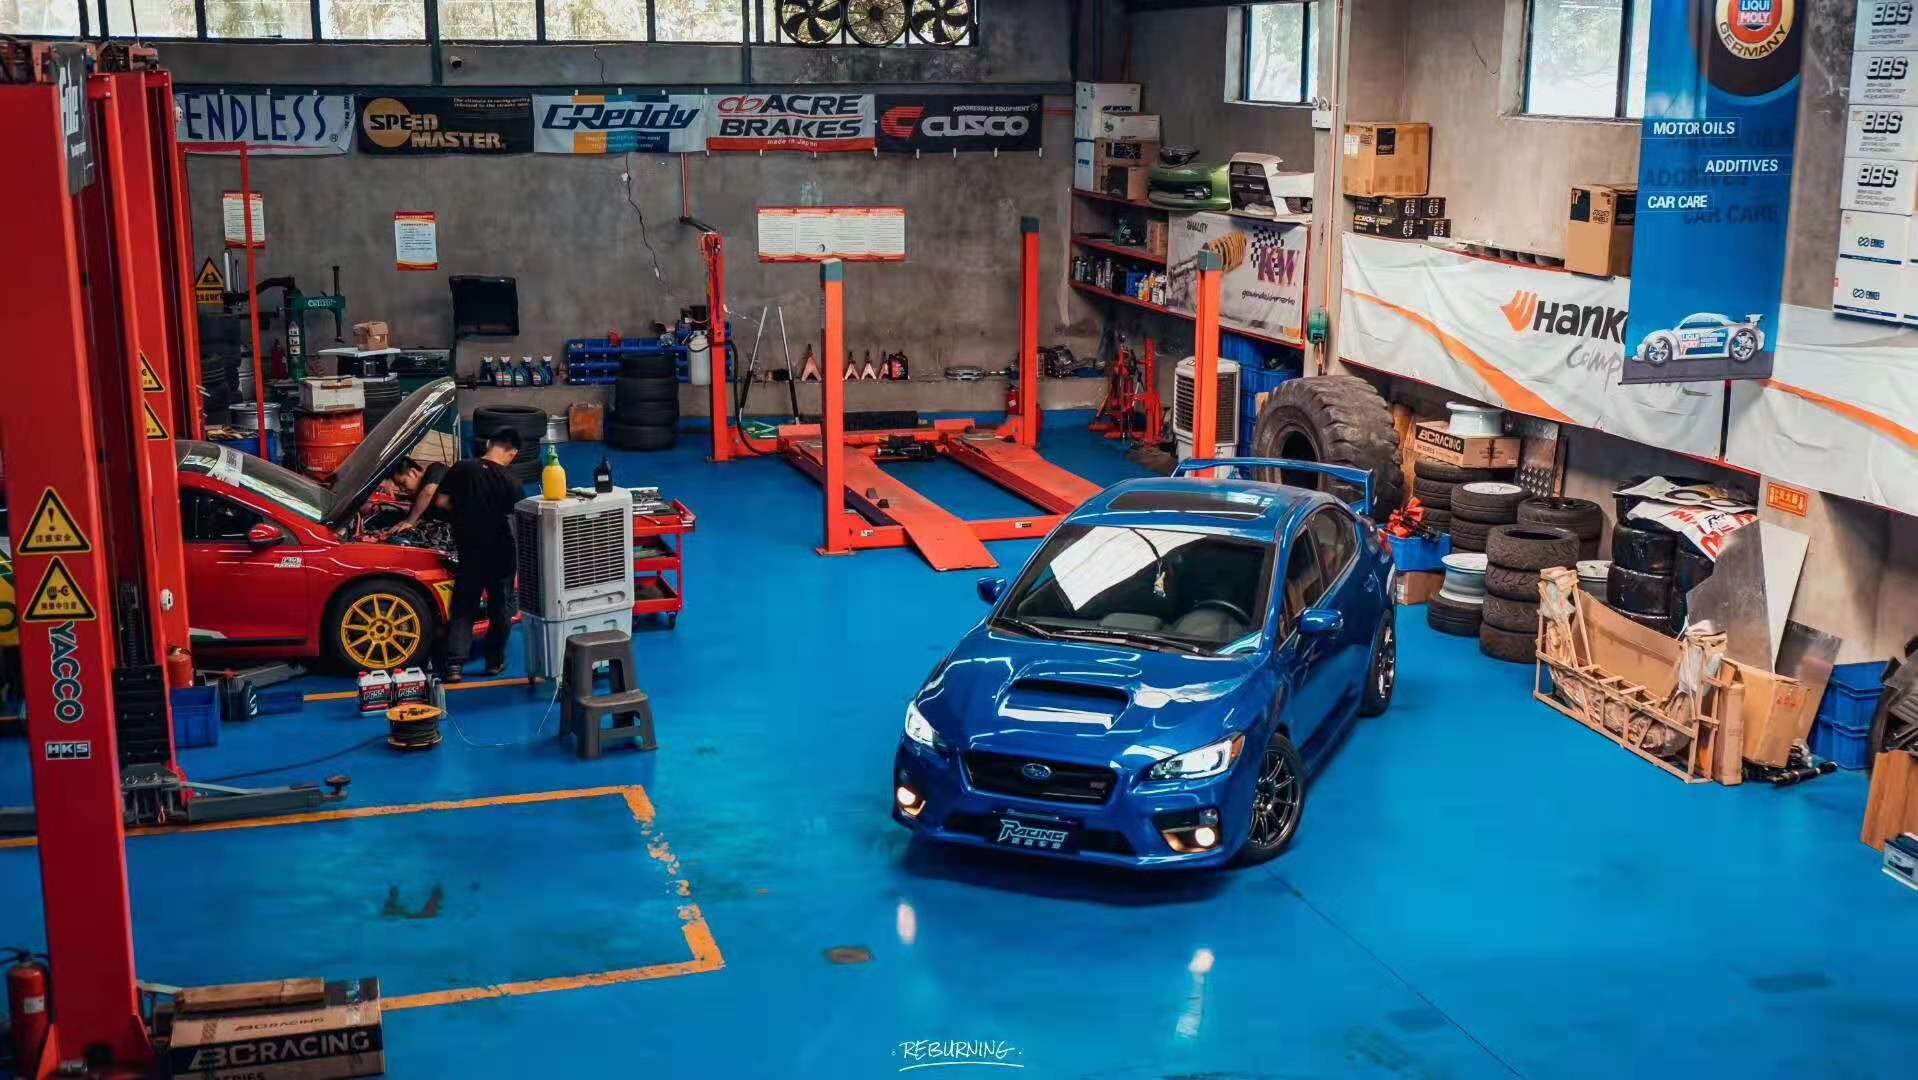 爆改废旧厂房,瑞森车业变身重庆汽车改装圈的798艺术区